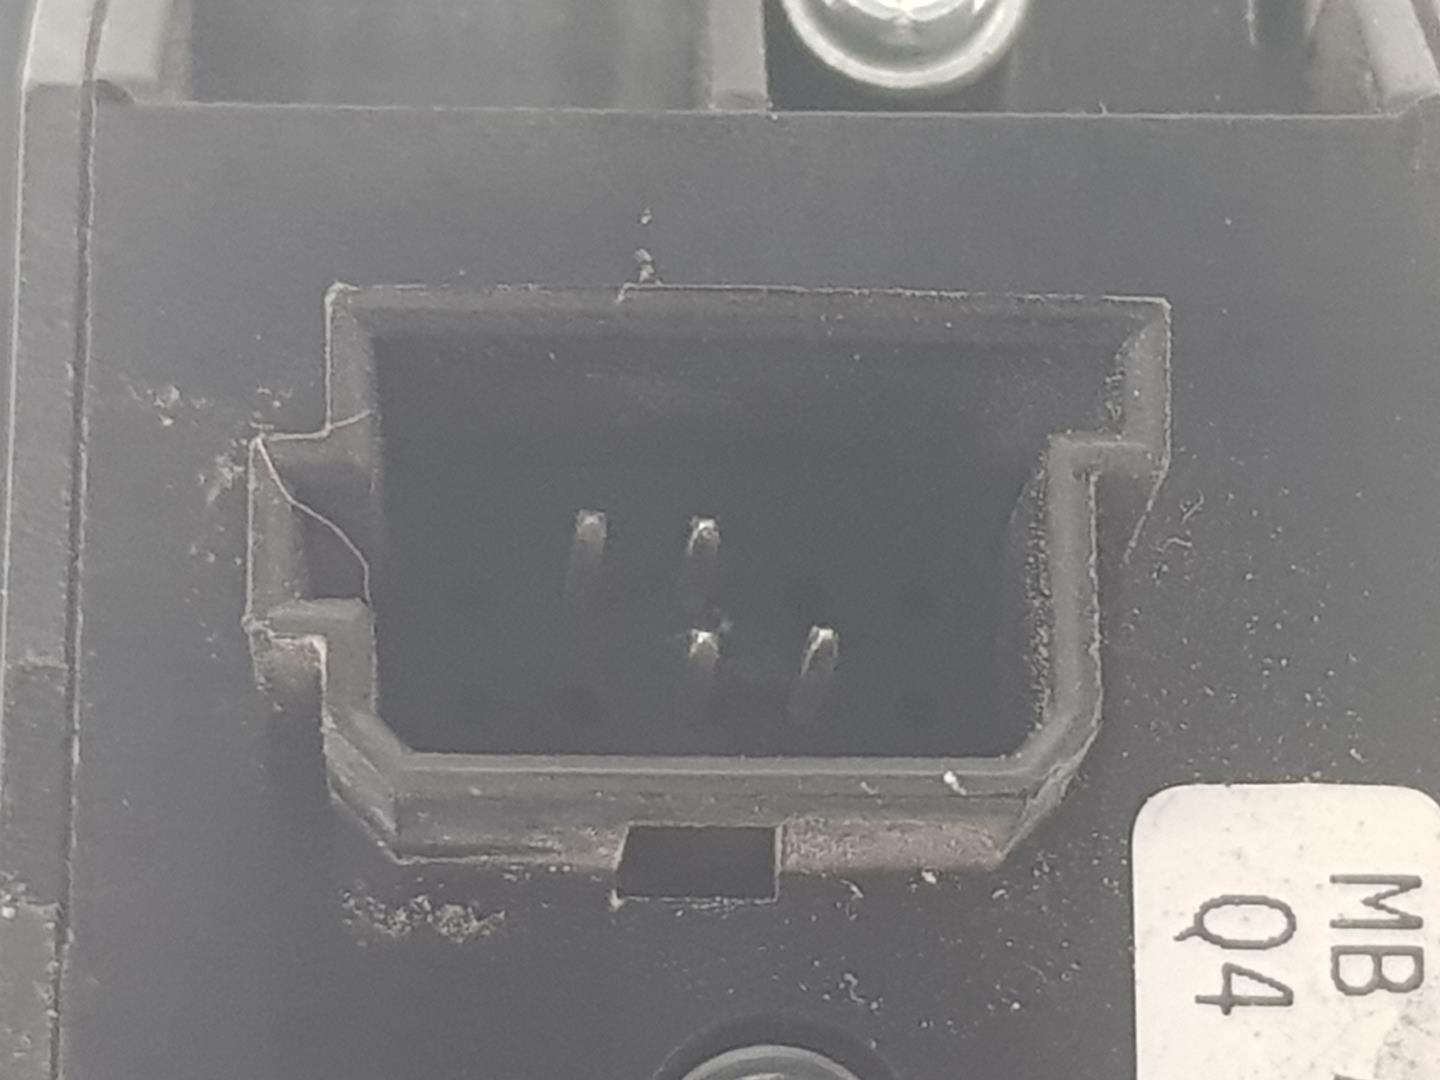 MERCEDES-BENZ Viano W639 (2003-2015) Кнопка стеклоподъемника передней правой двери A6395450613, A6395450613 24235770